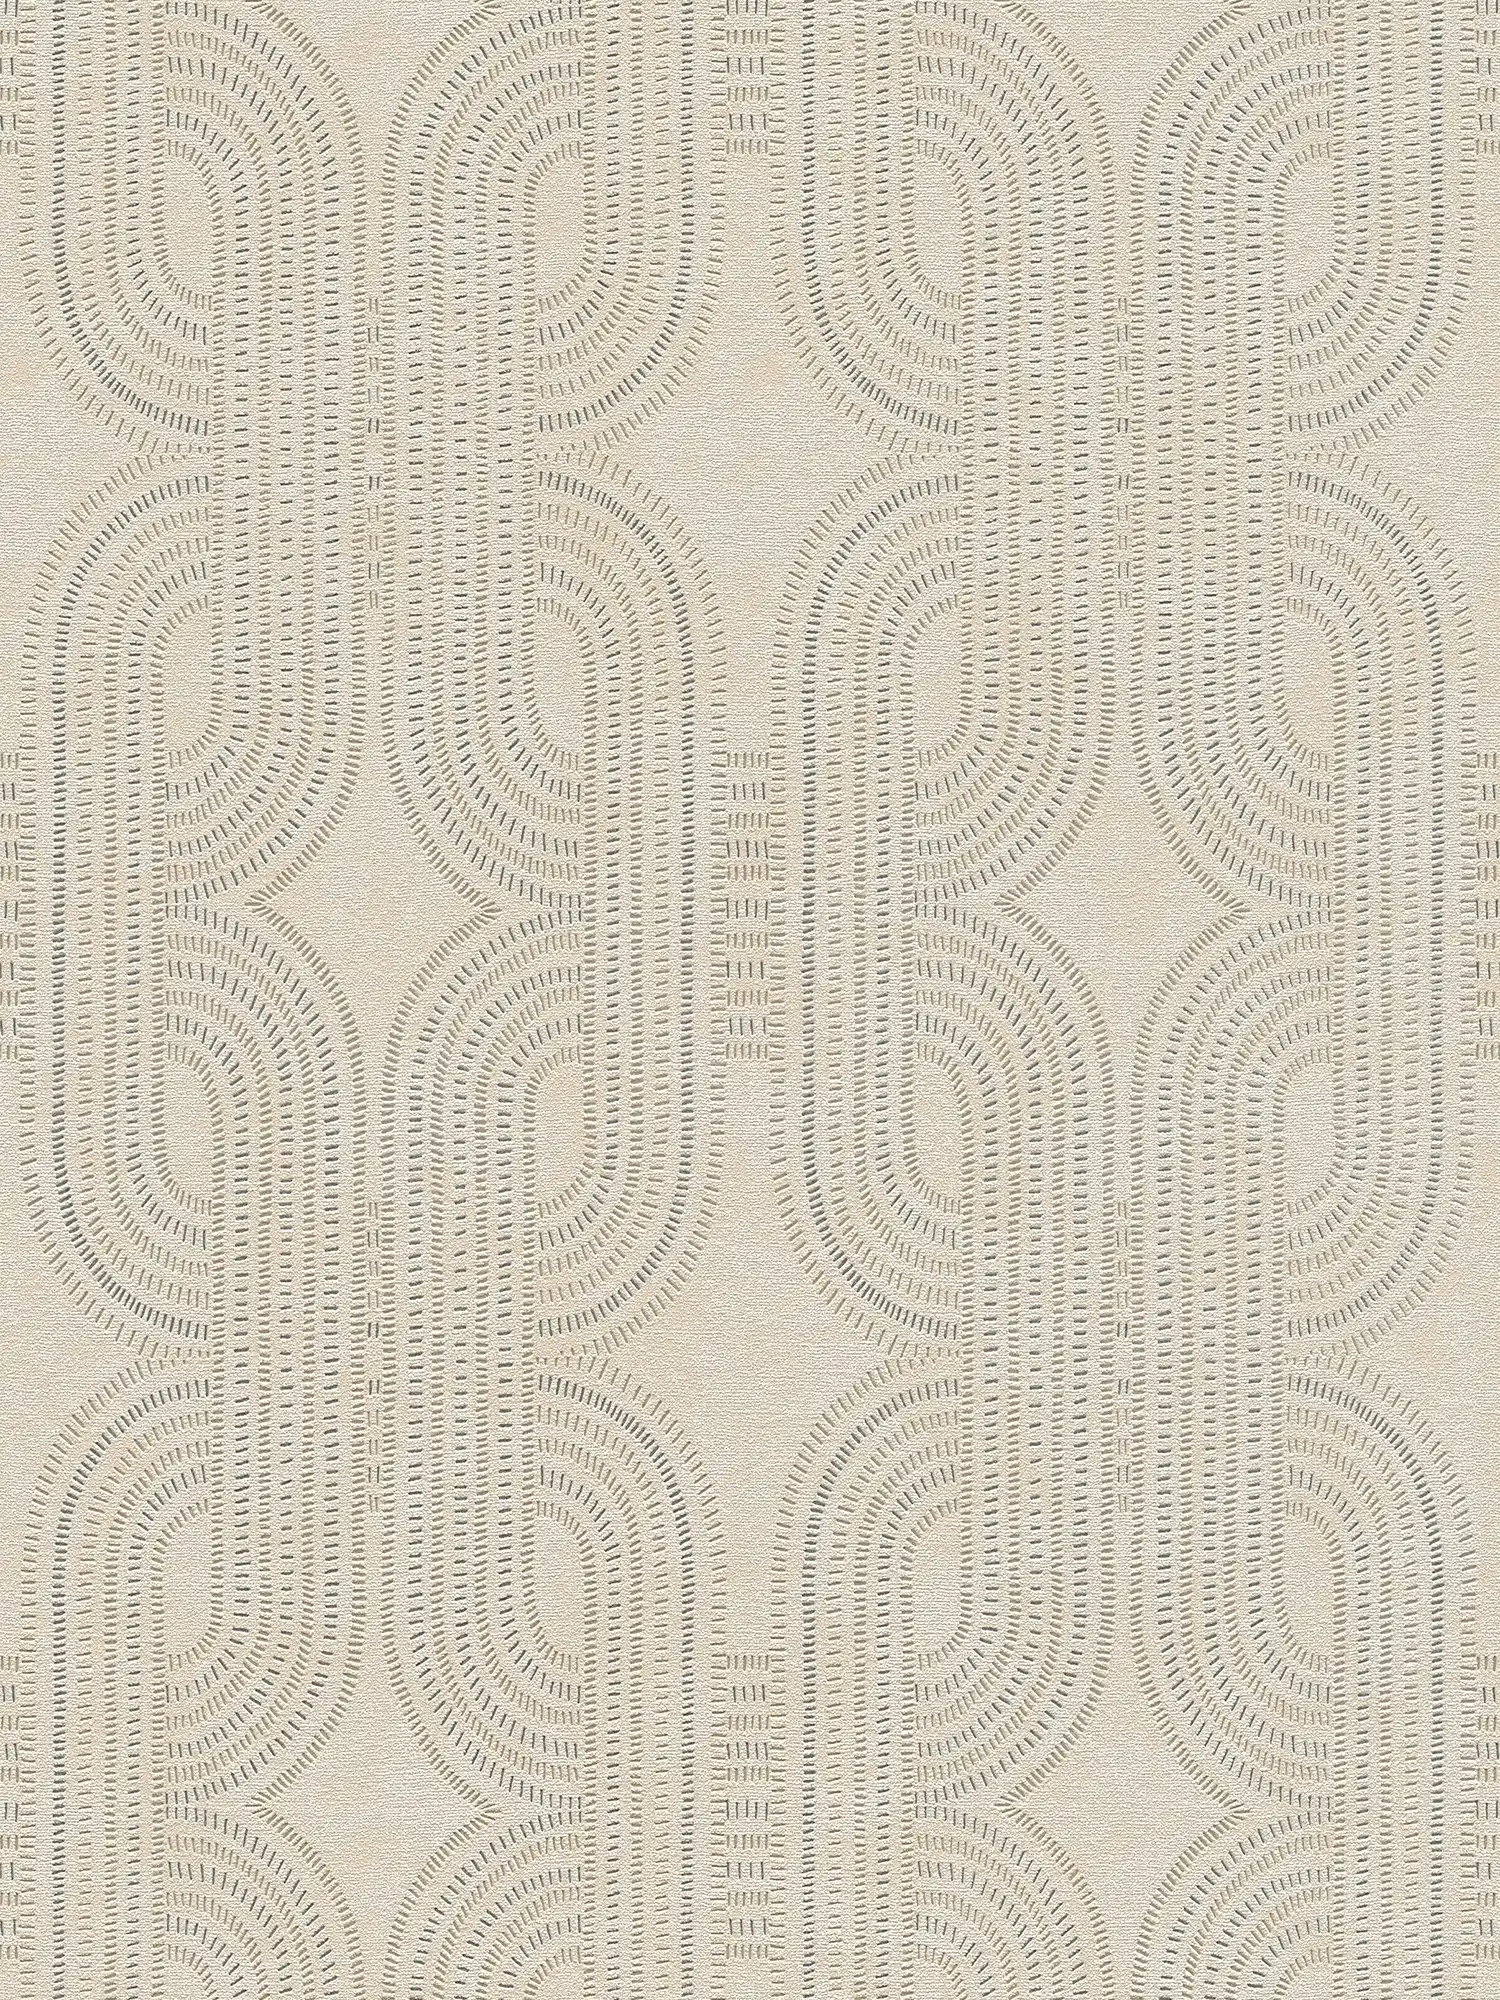 papier peint en papier intissé graphique rétro - beige, métallique, gris
